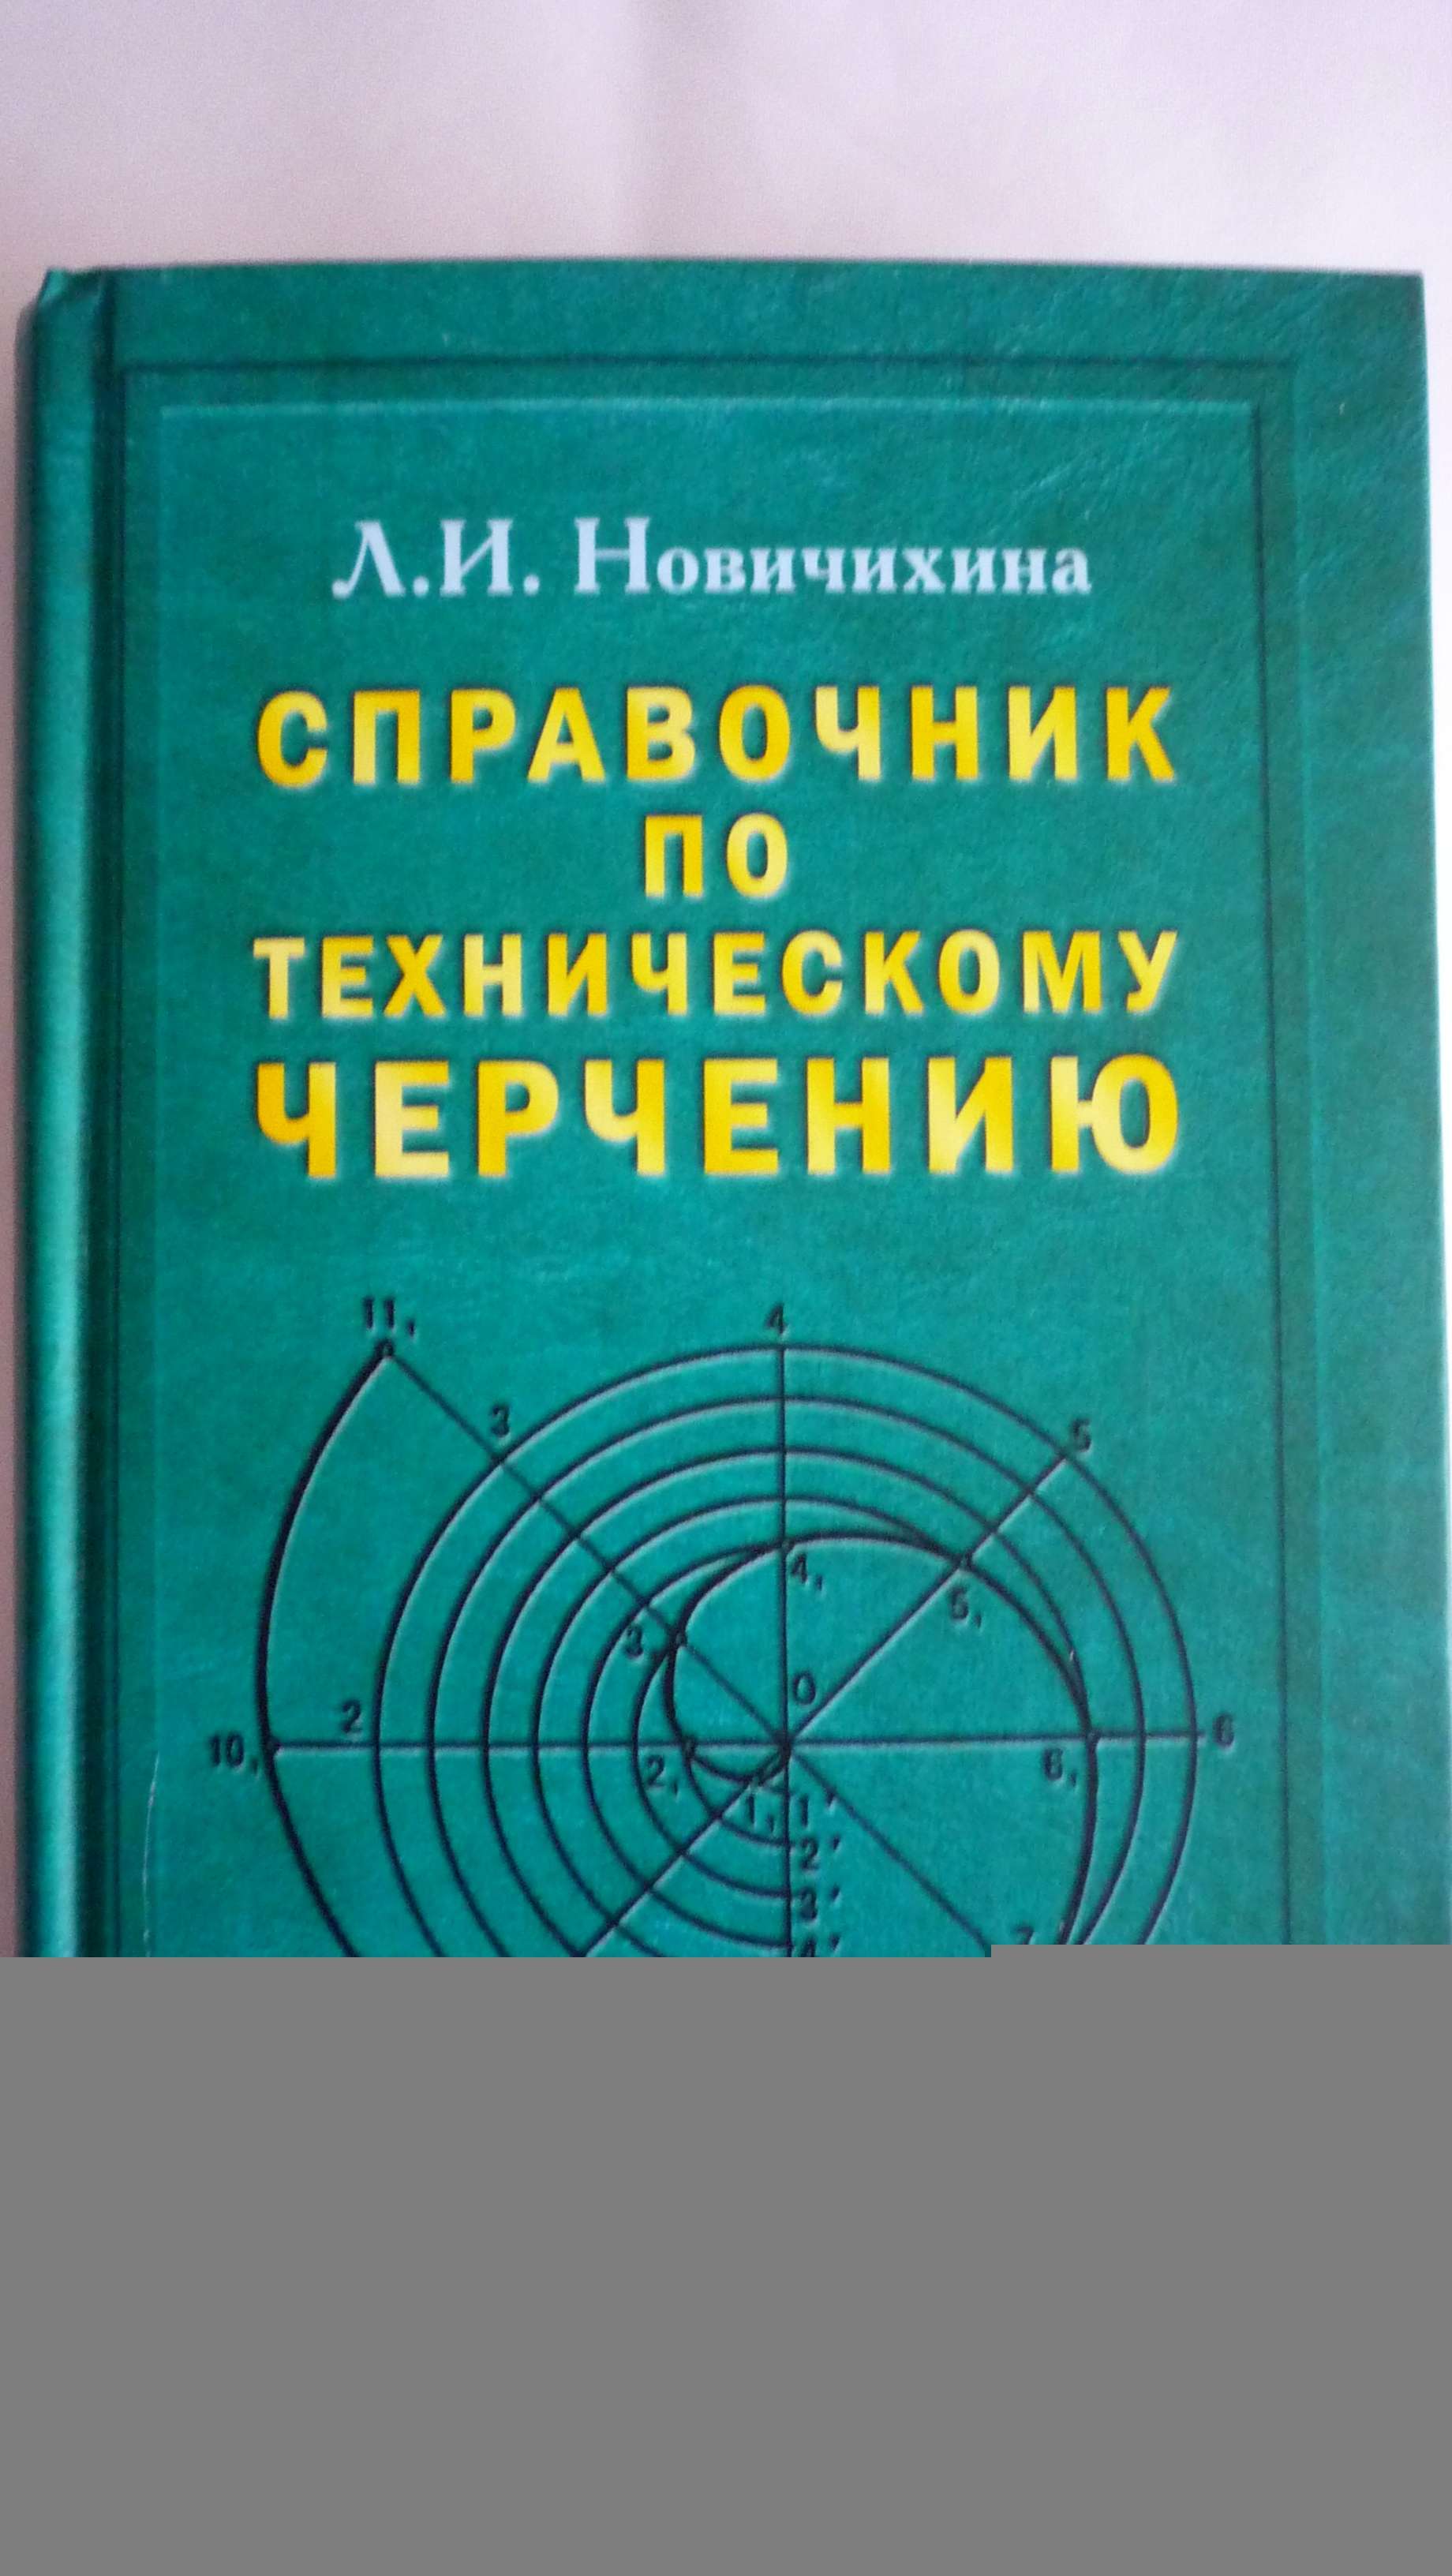 Учебник русского языка 8 класса пичугов 1995 года выпуска гдз онлайн